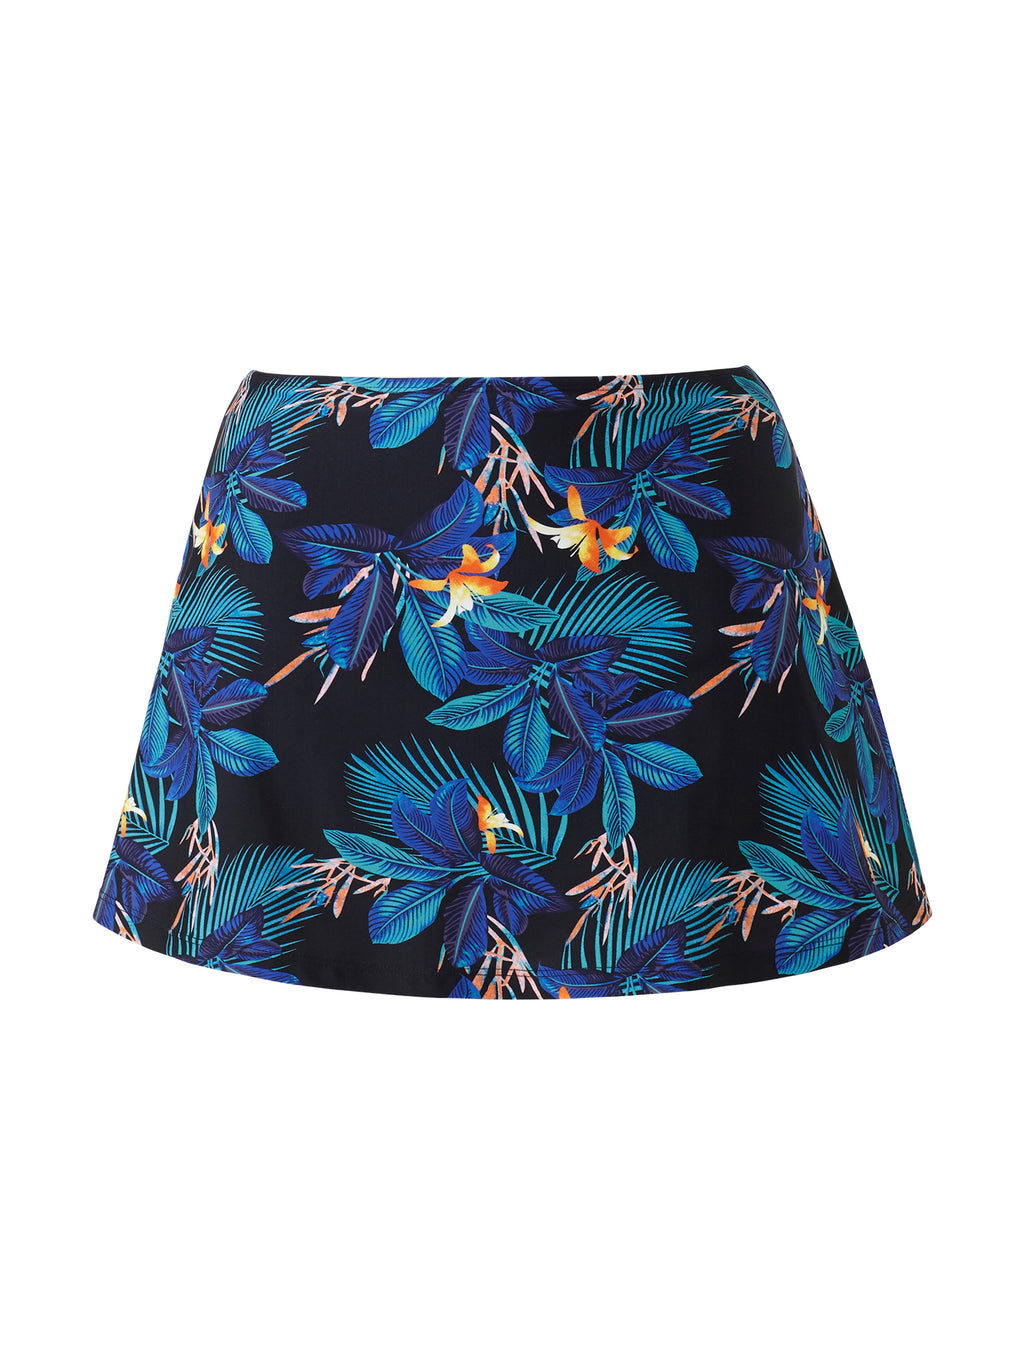 Swim Skirts & Dresses UK, Ladies Swimdress Swimwear